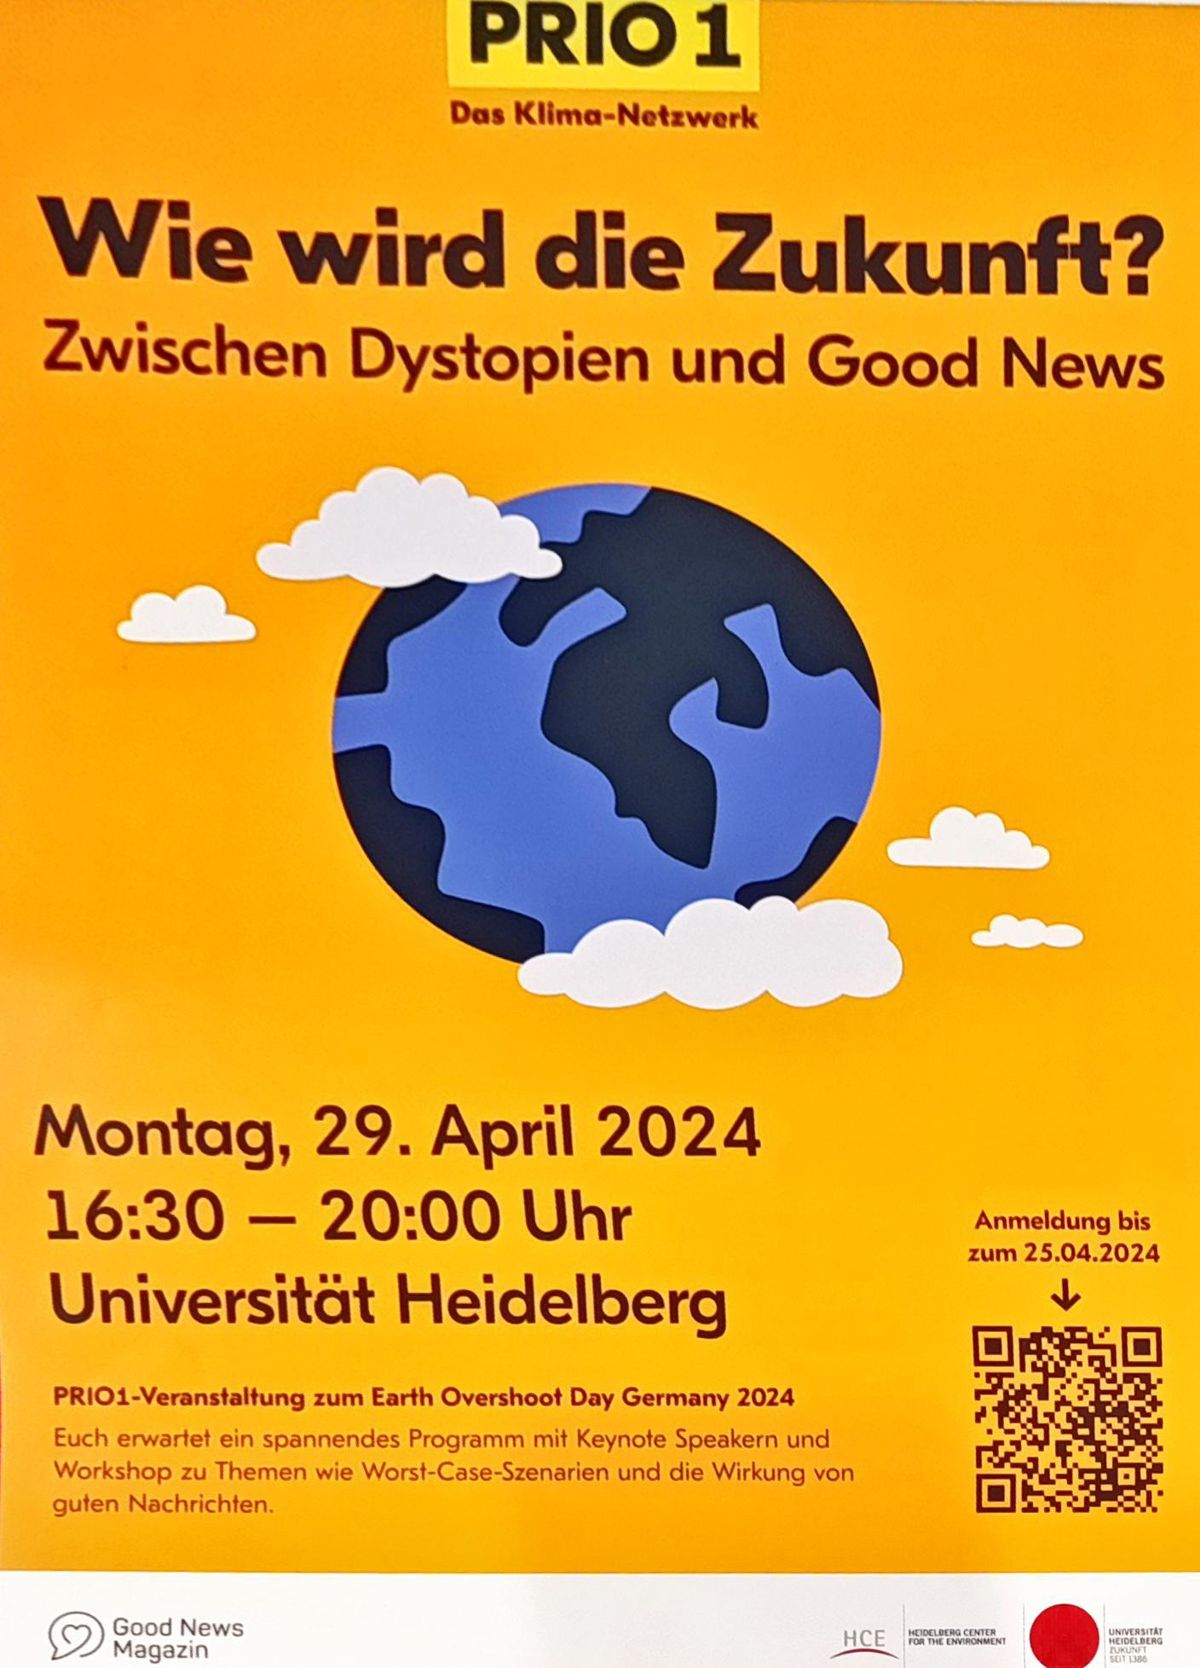 Klimaworkshop am 29. April 2024 in Heidelberg